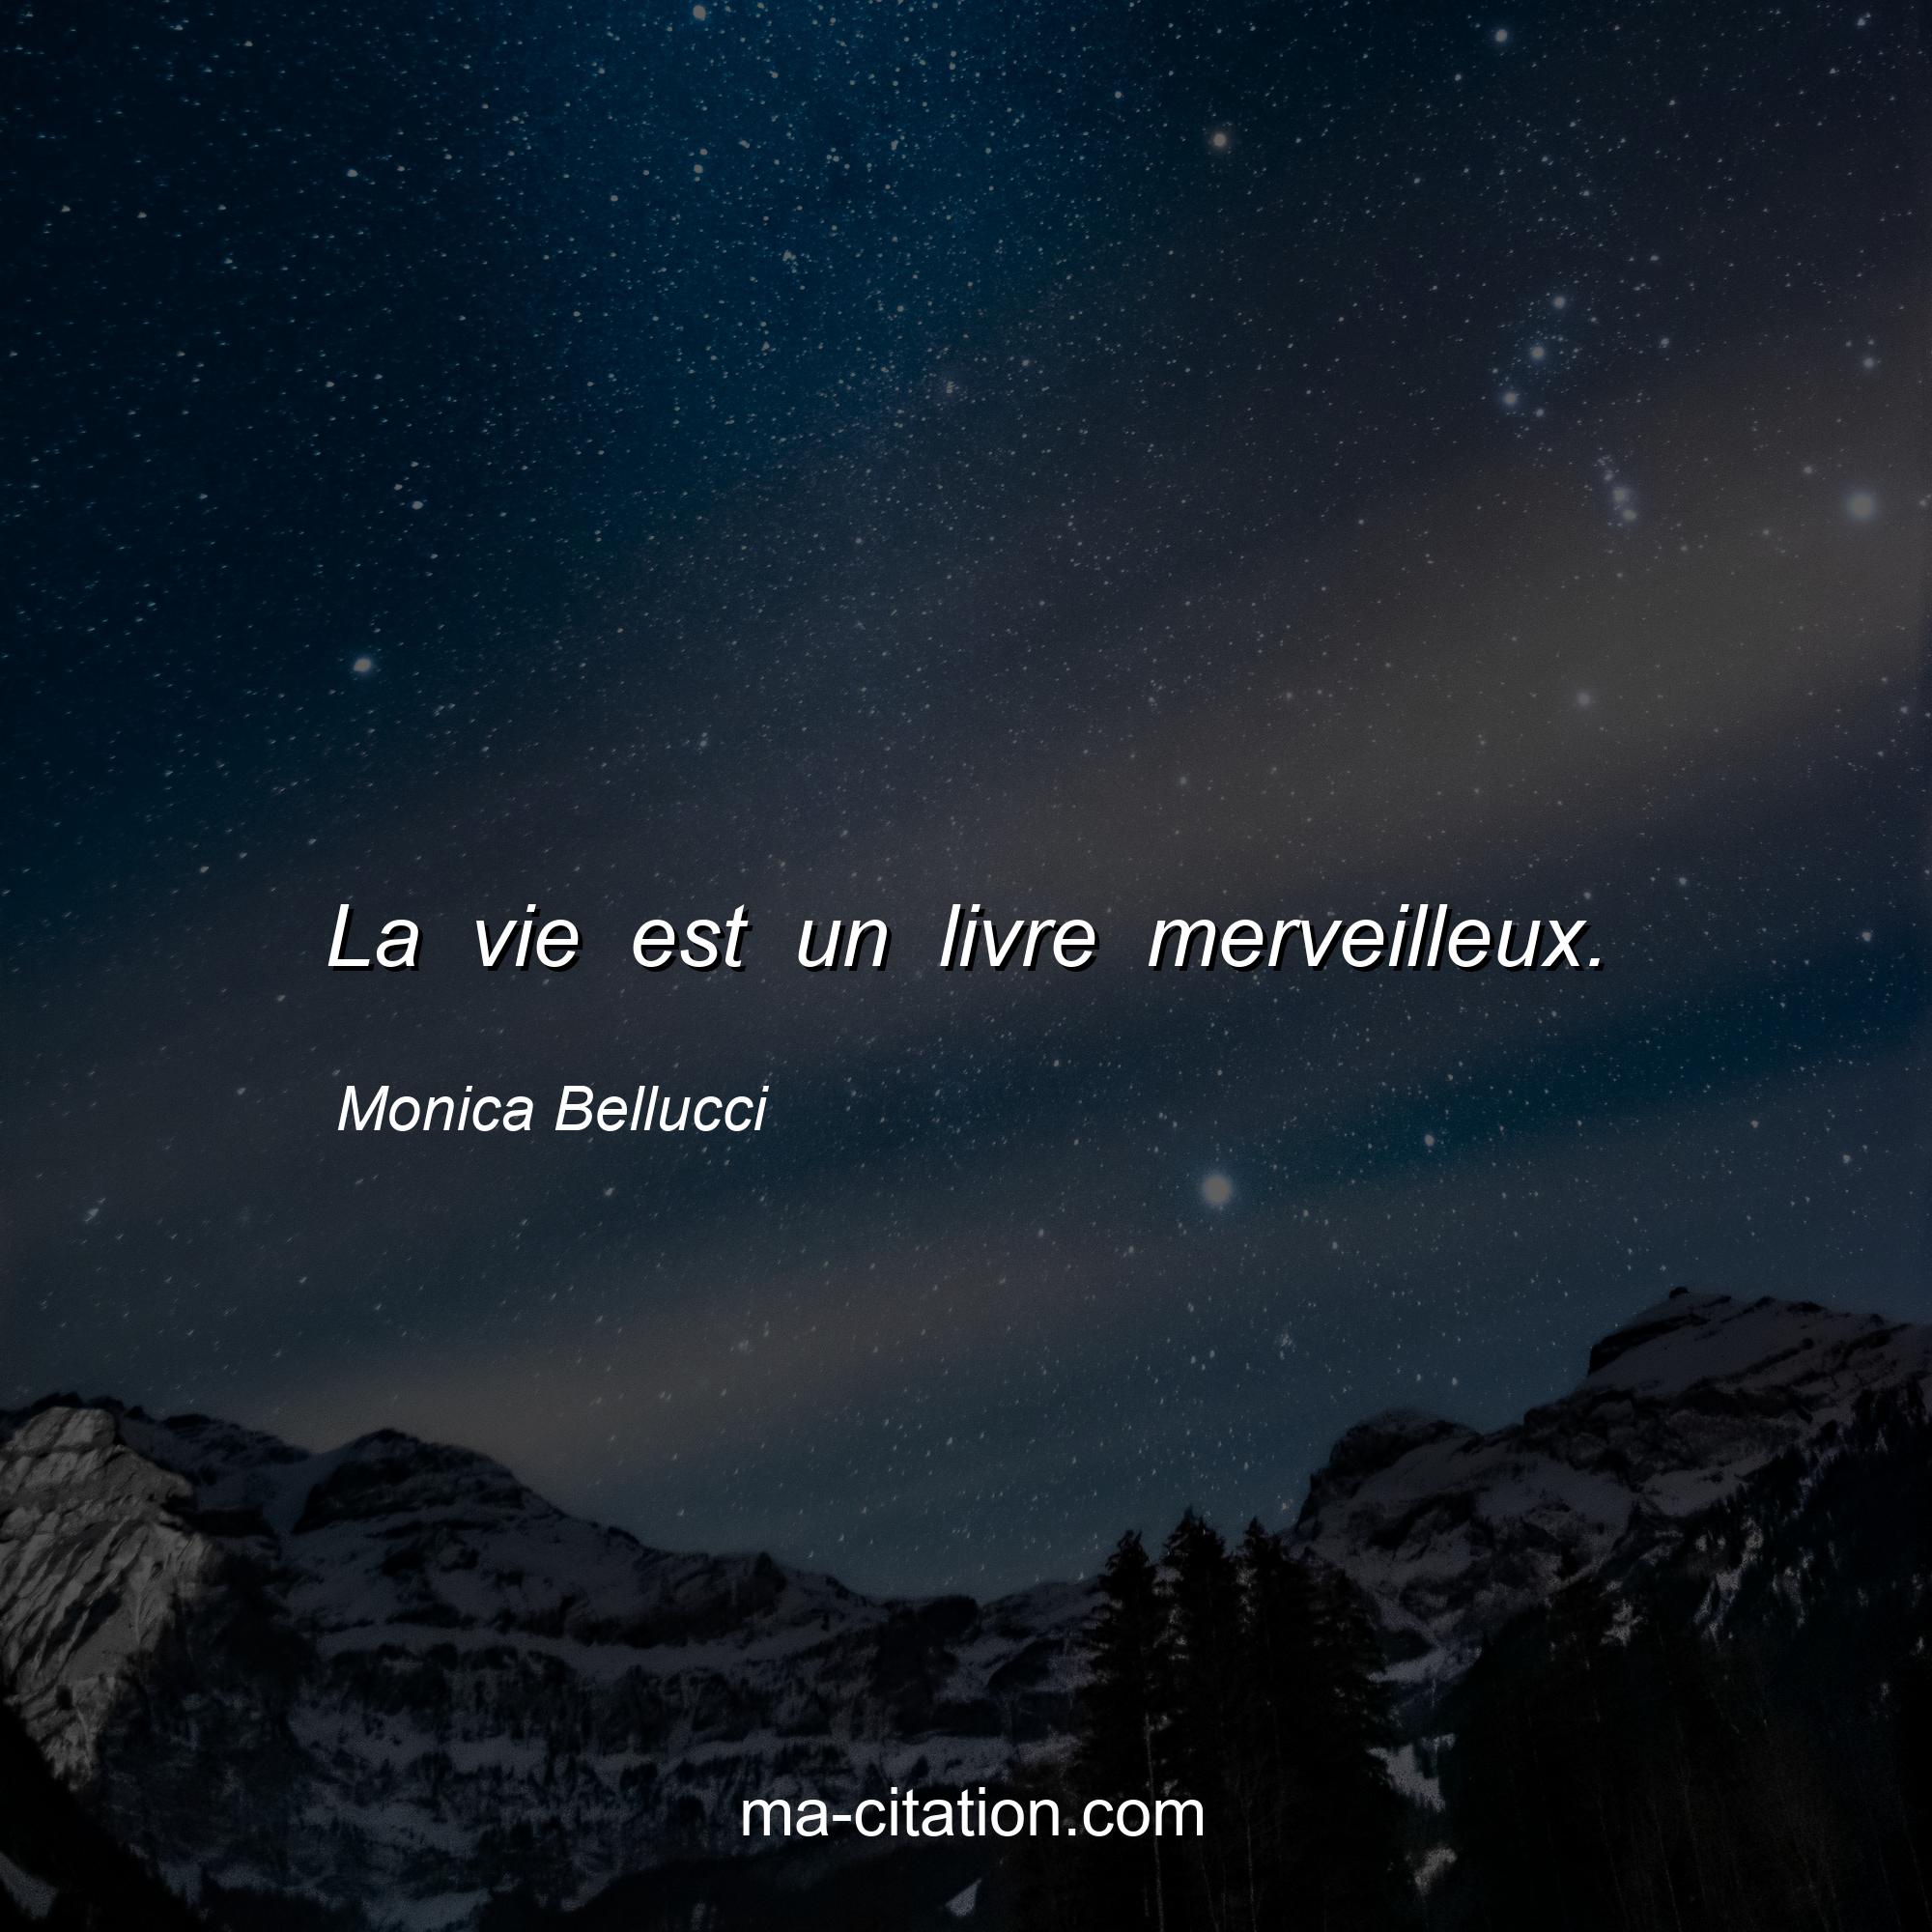 Monica Bellucci : La vie est un livre merveilleux.